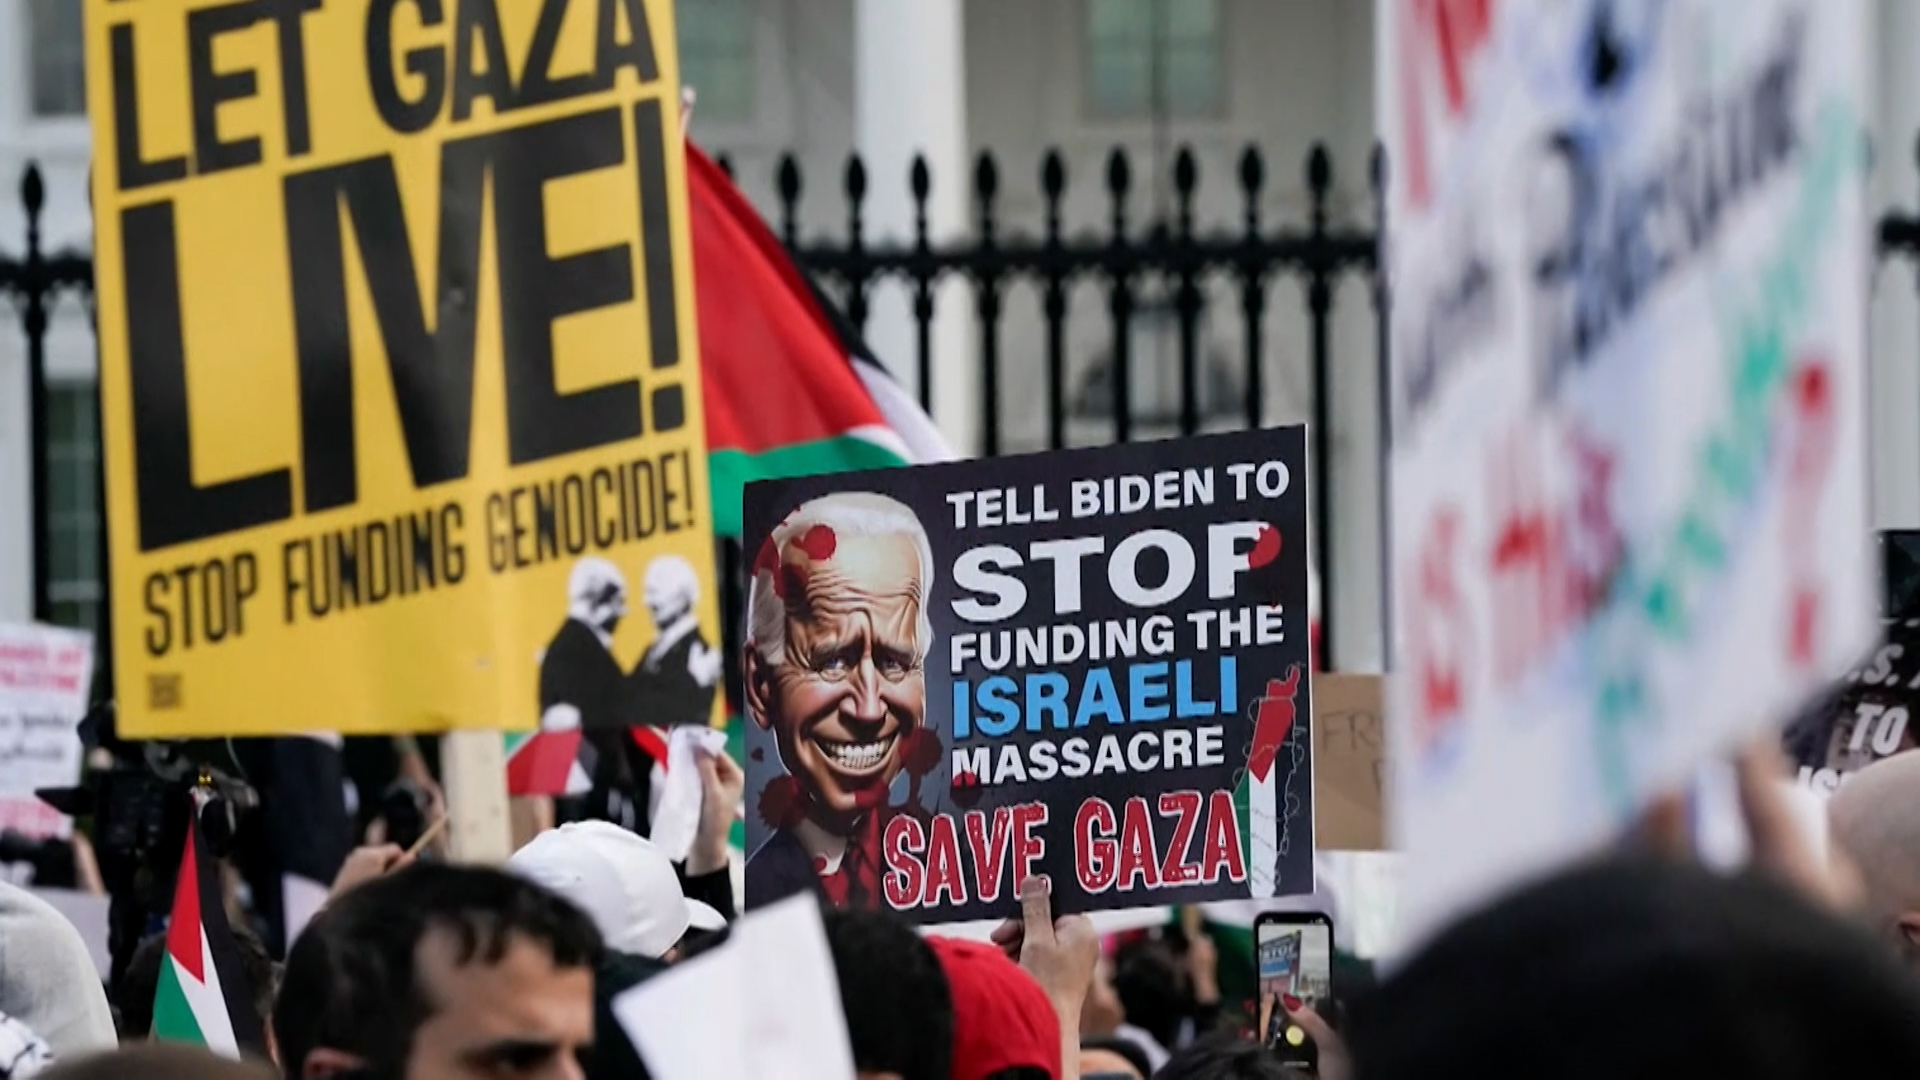 حرب غزة تتحول إلى كابوس إسرائيلي في الداخل والخارج | البرامج – البوكس نيوز